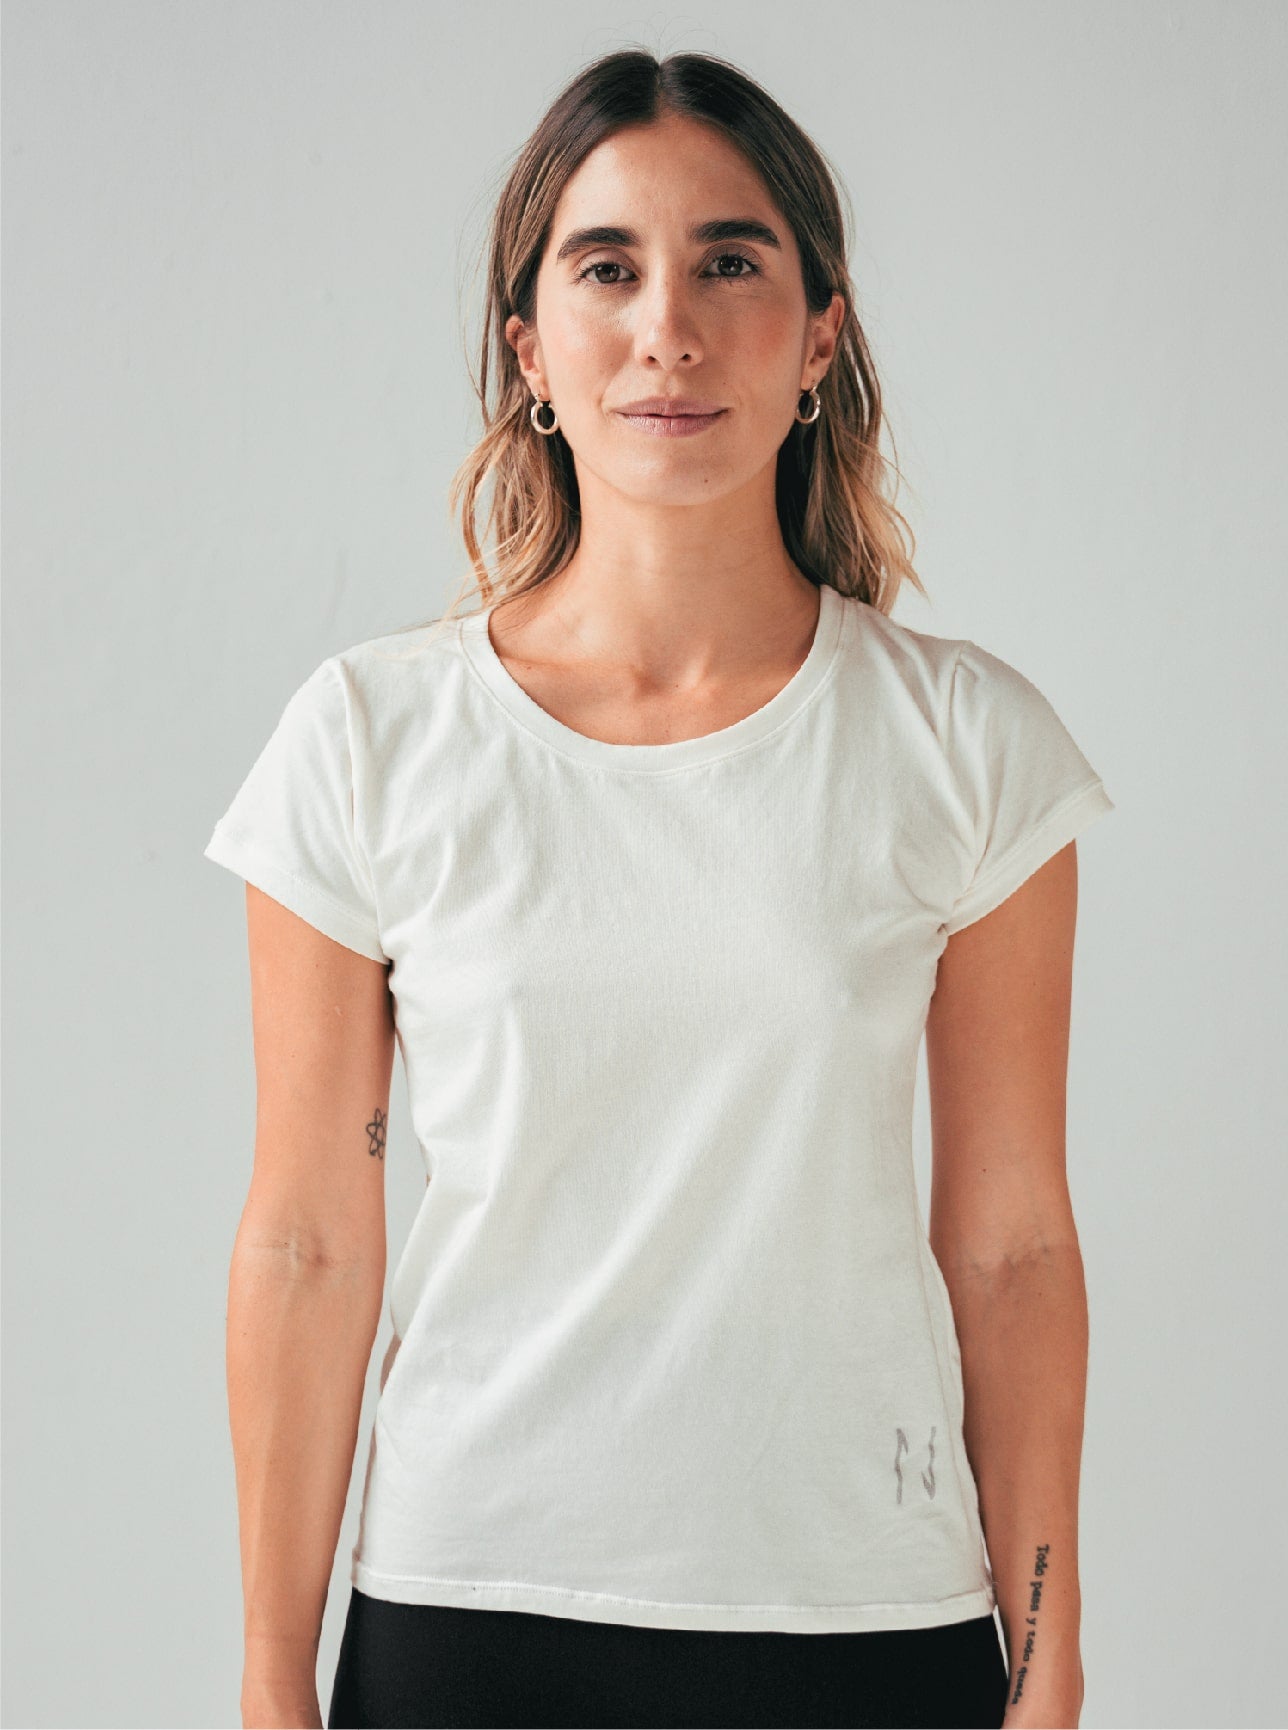 Camiseta manga corta mujer 